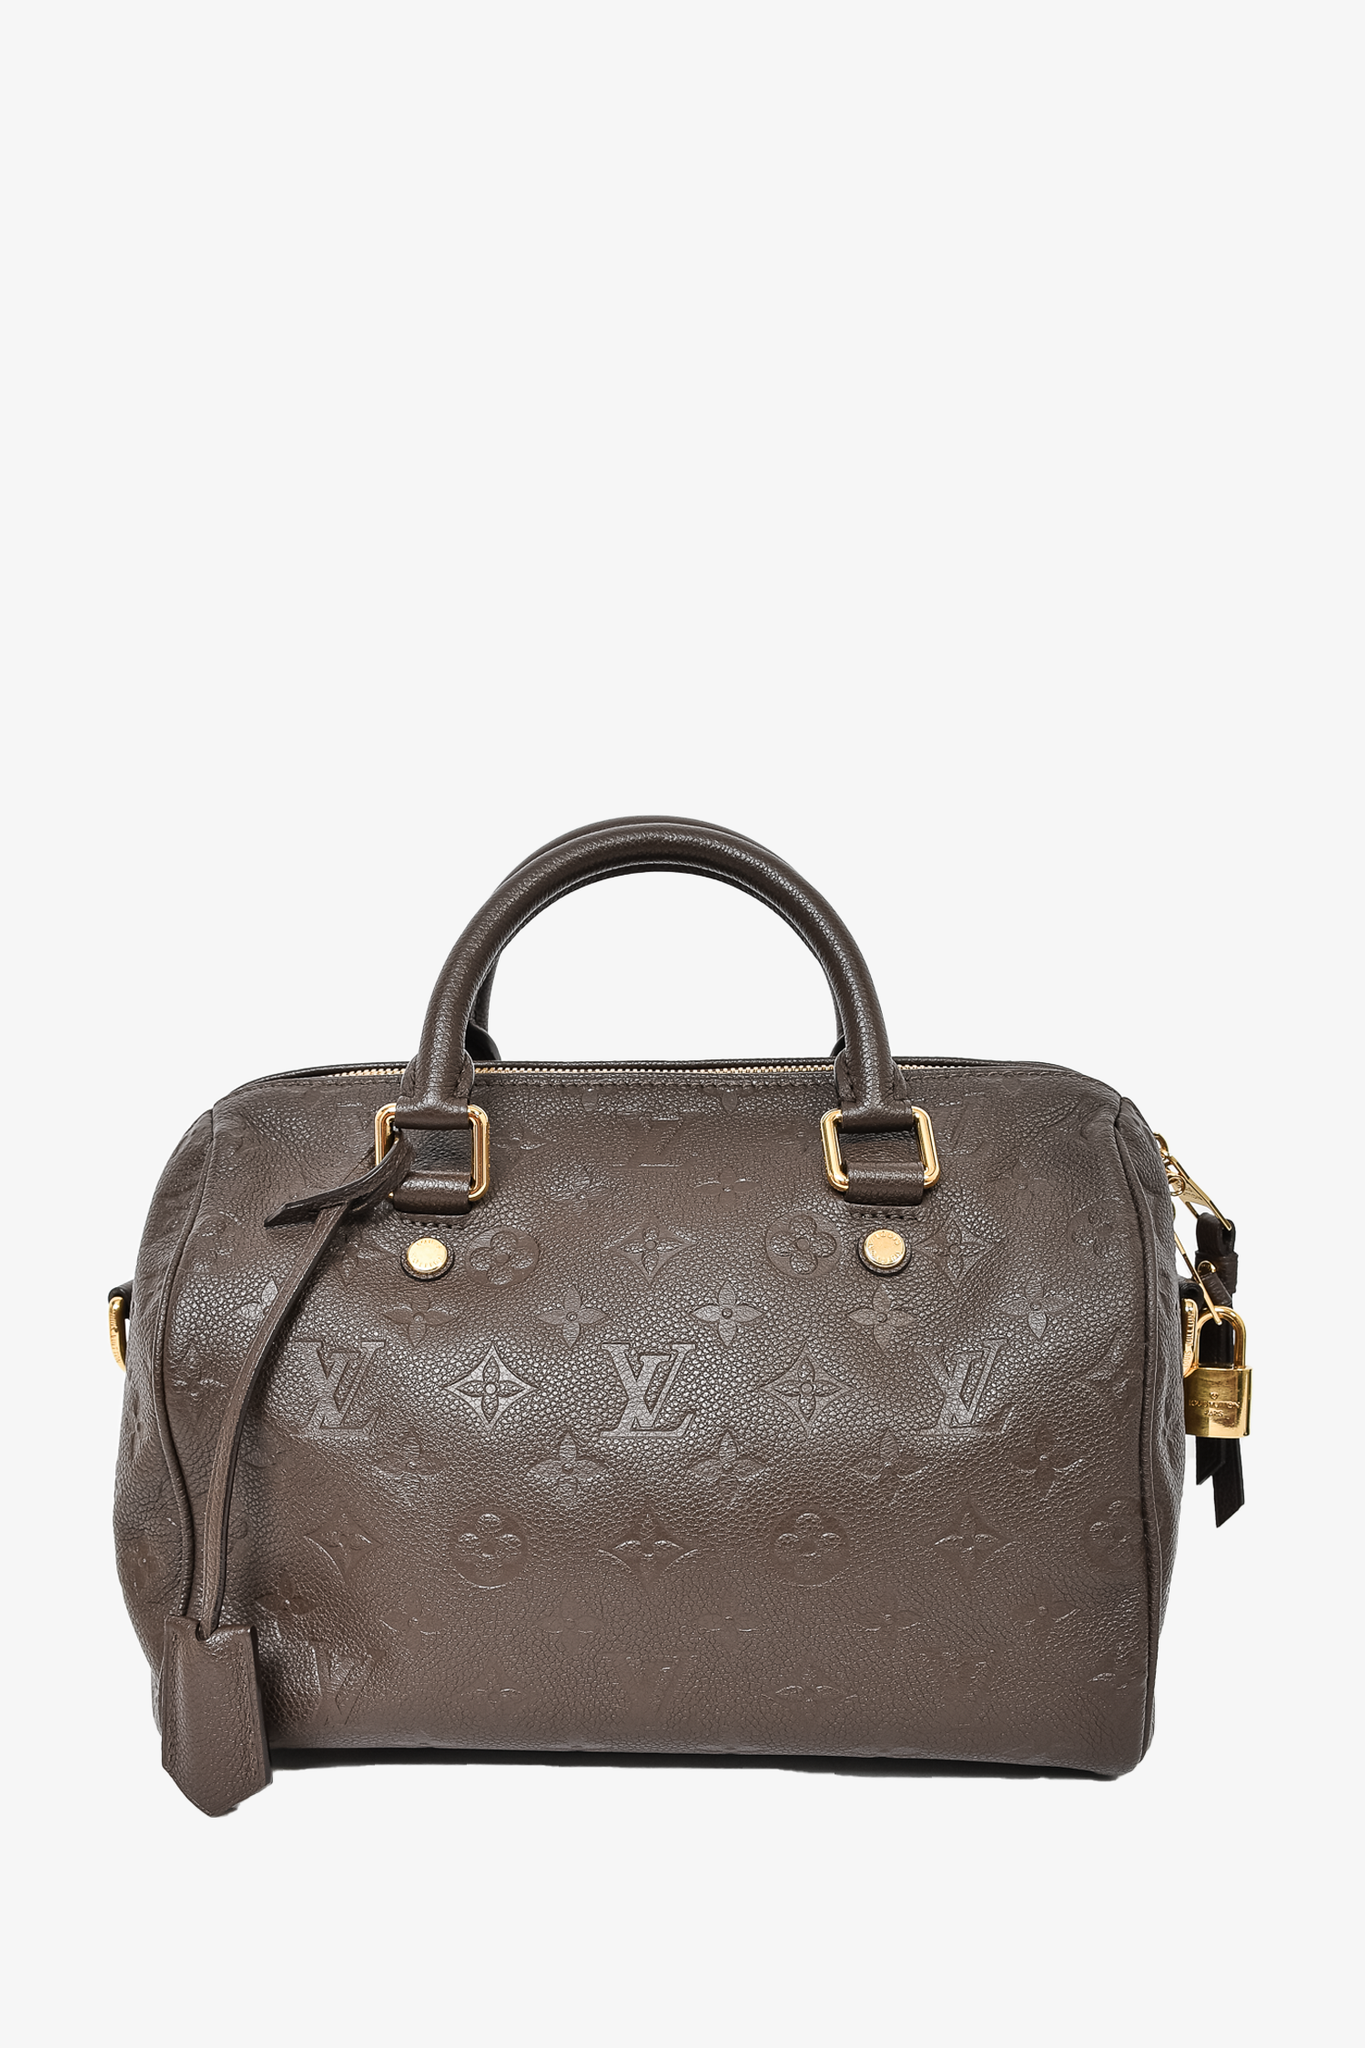 Louis Vuitton 2018 pre-owned Saintonge crossbody bag - ShopStyle